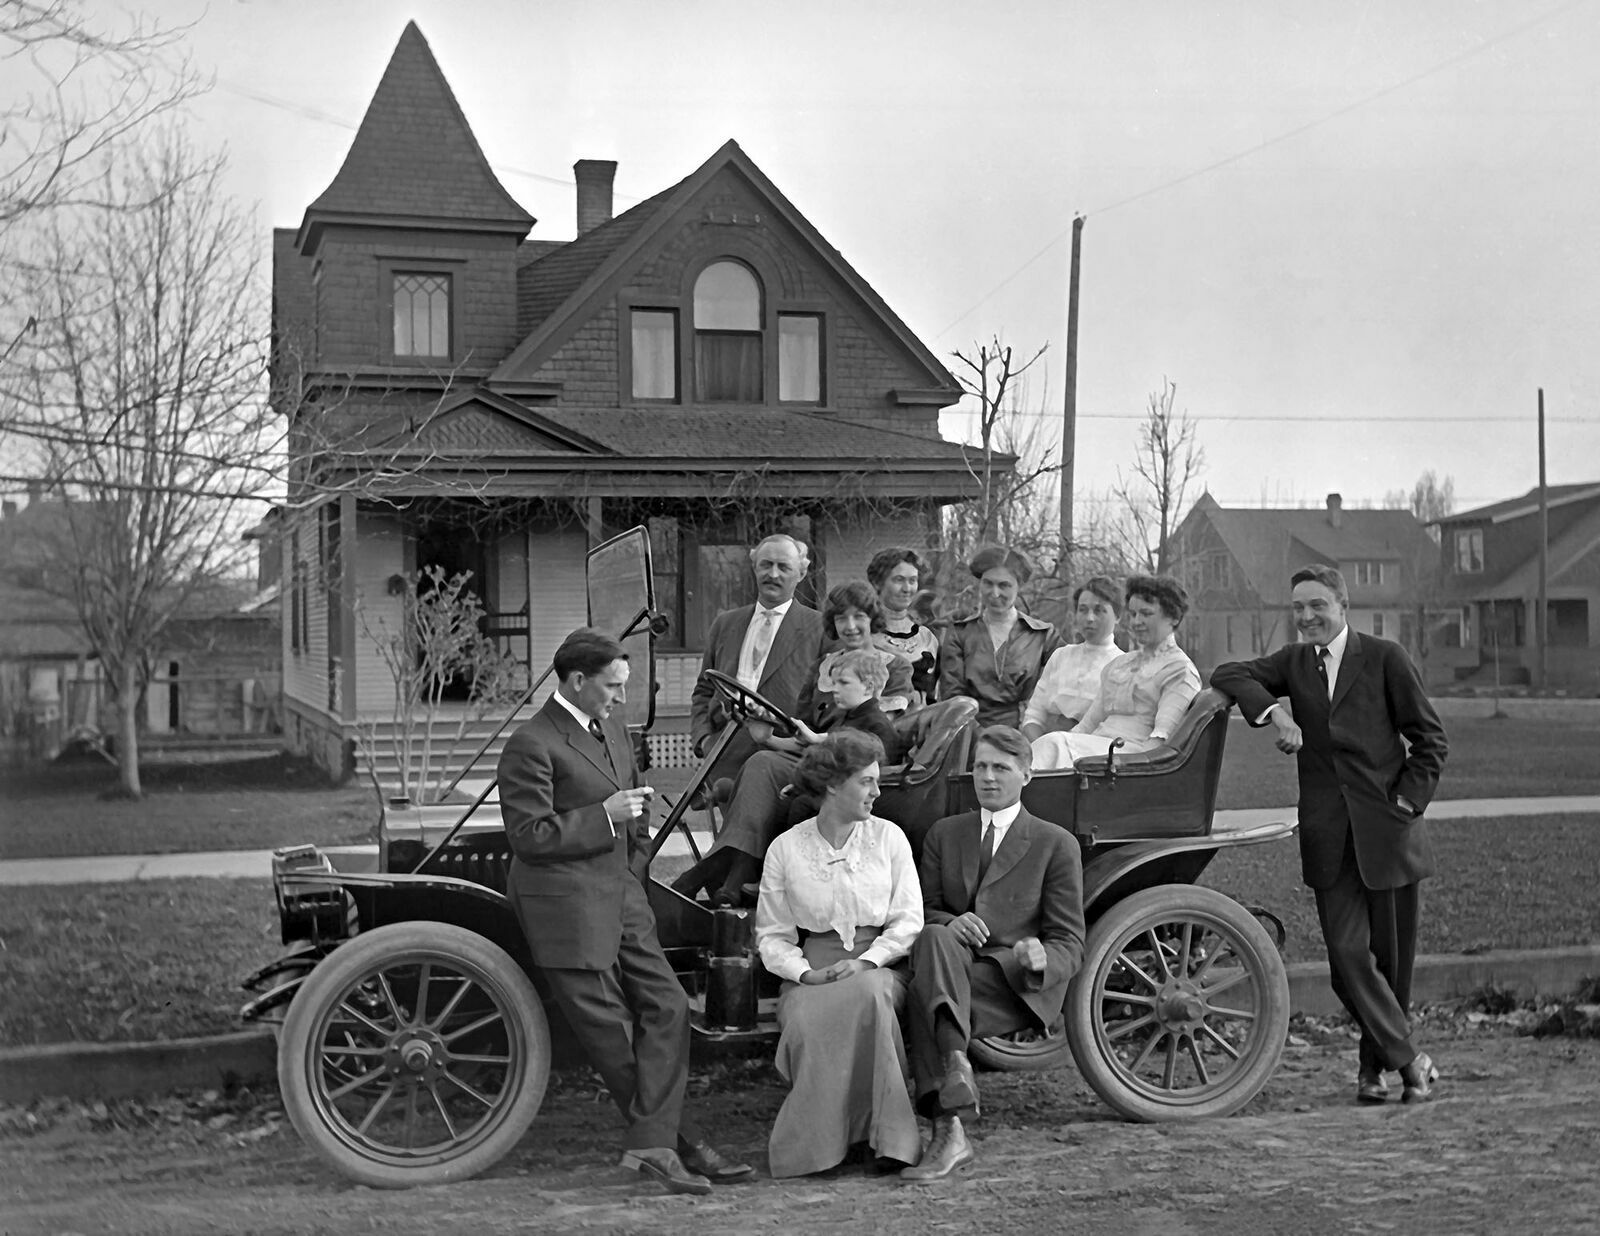 1913 Family Posing on Car Spokane Washington Vintage Old Photo 13